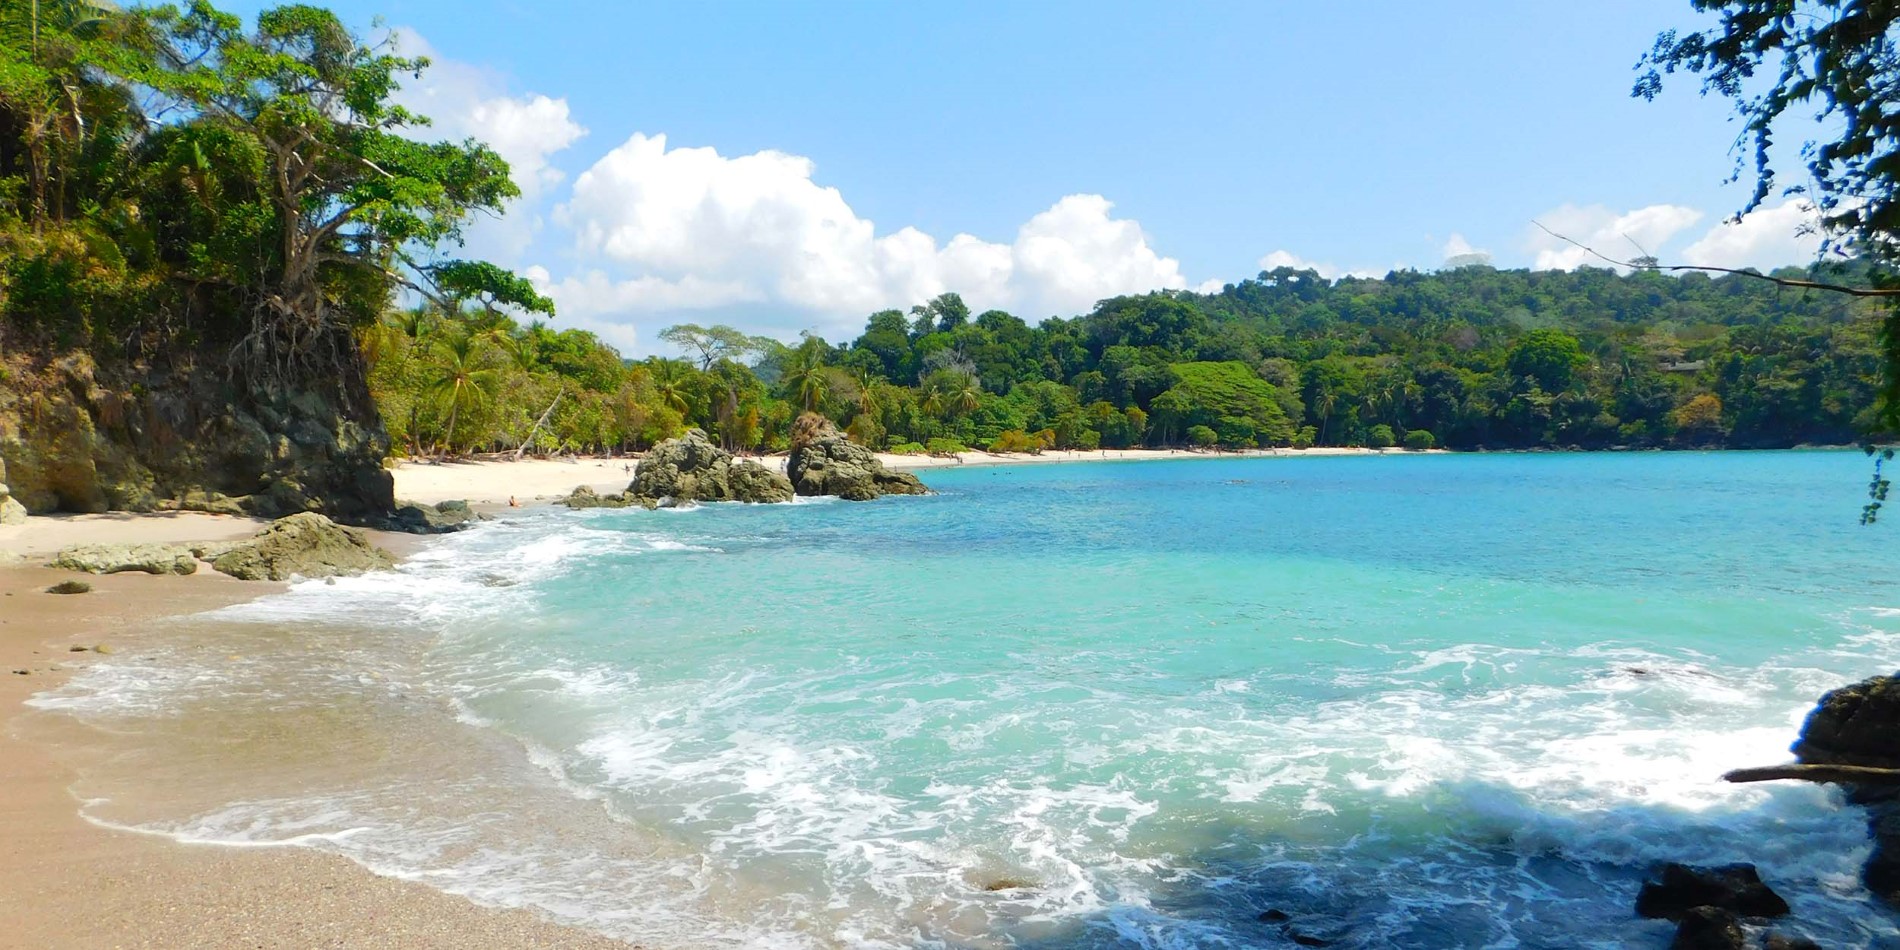 Discover idyllic Gemelas beach in Costa Rica.